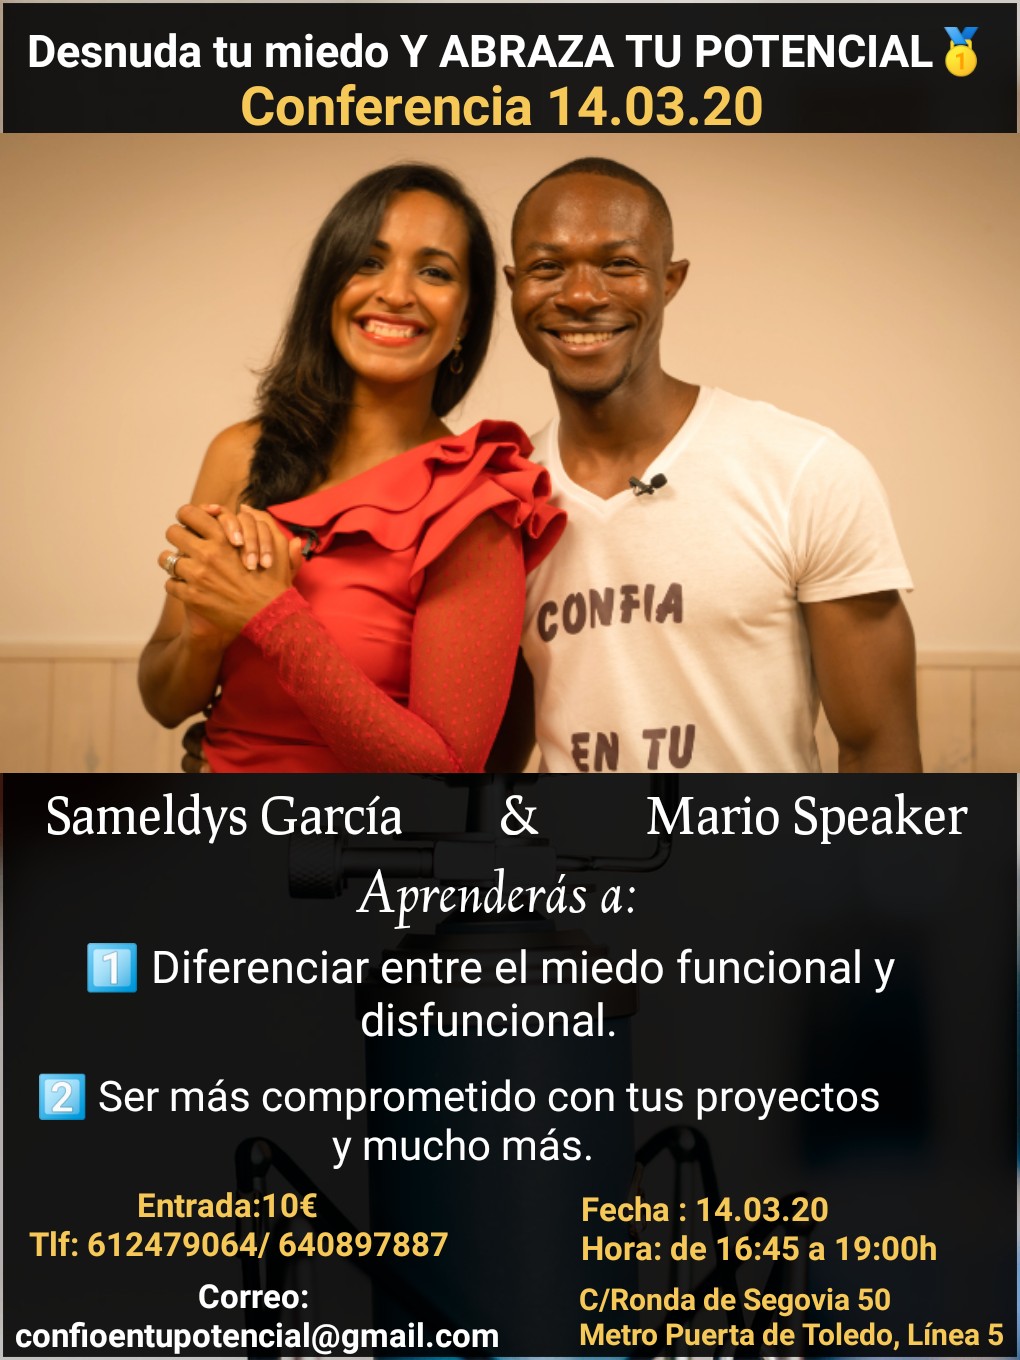 «desnuda_tu_miedo_y_abraza_tu_potencial»_con_sameldys_garcía_y_mario_speaker